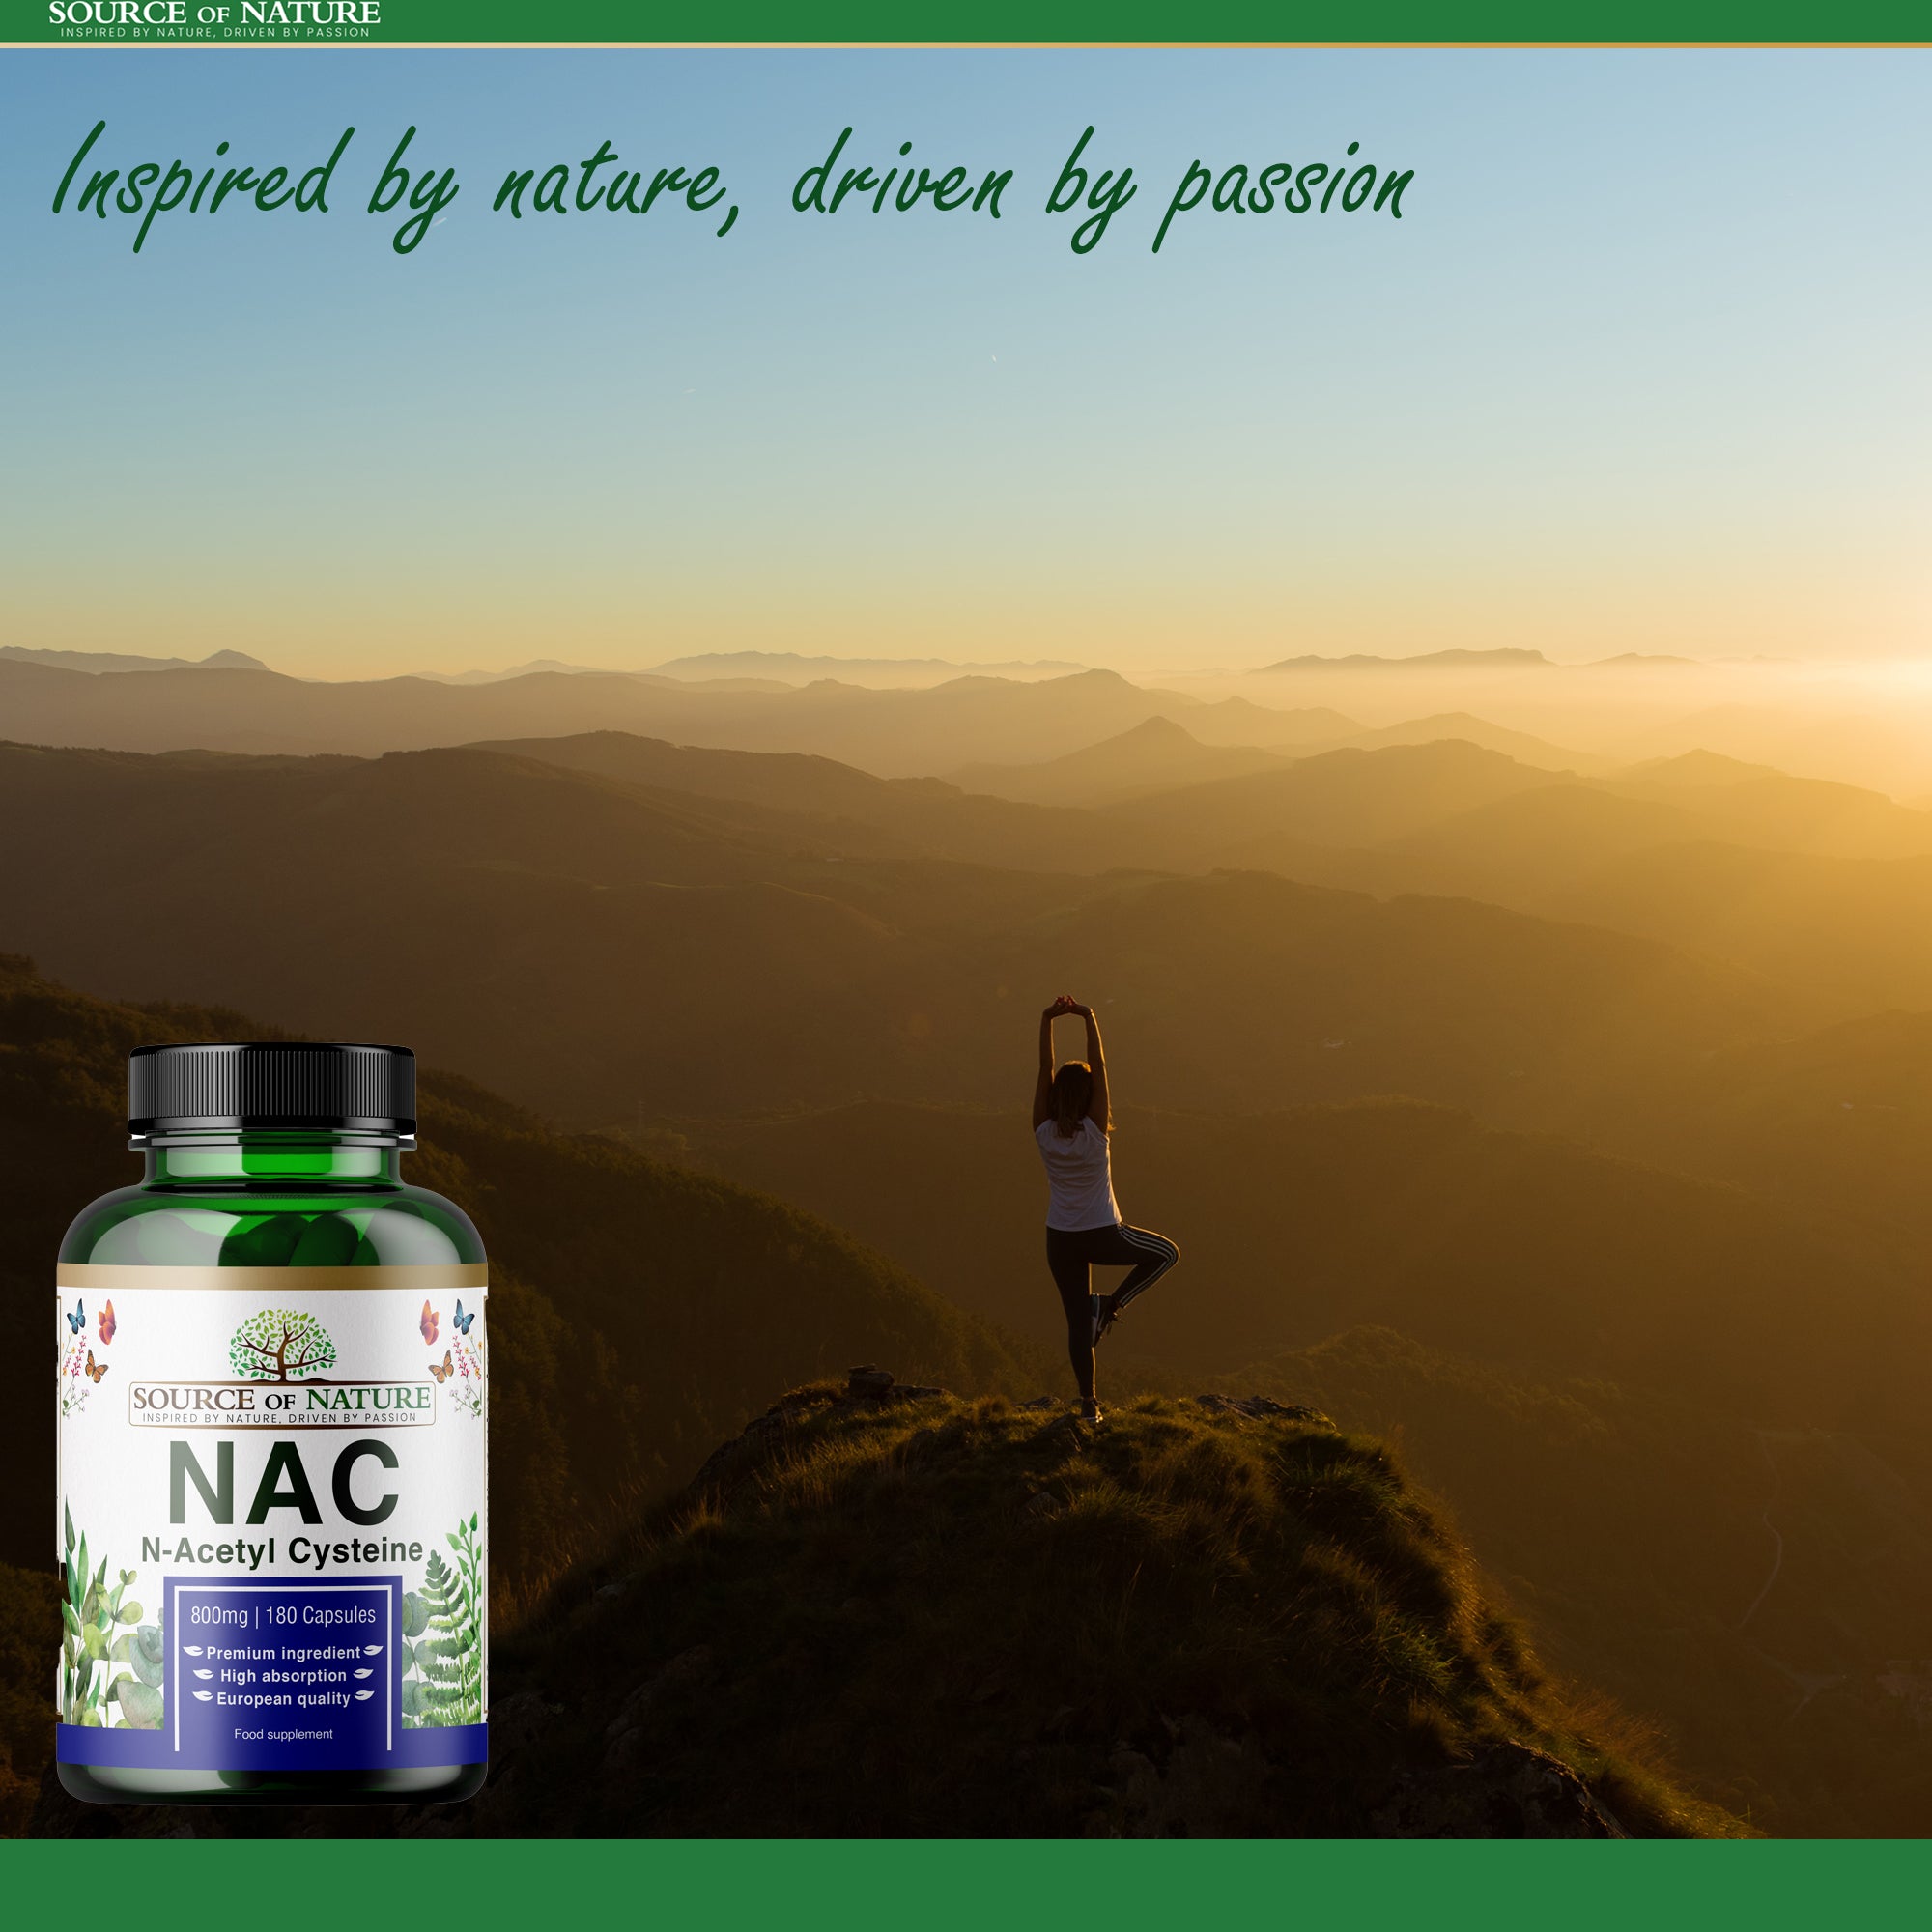 NAC (N-Acetilcisteina) 800mg | 180 Capsule | Fornitura per 2 mesi